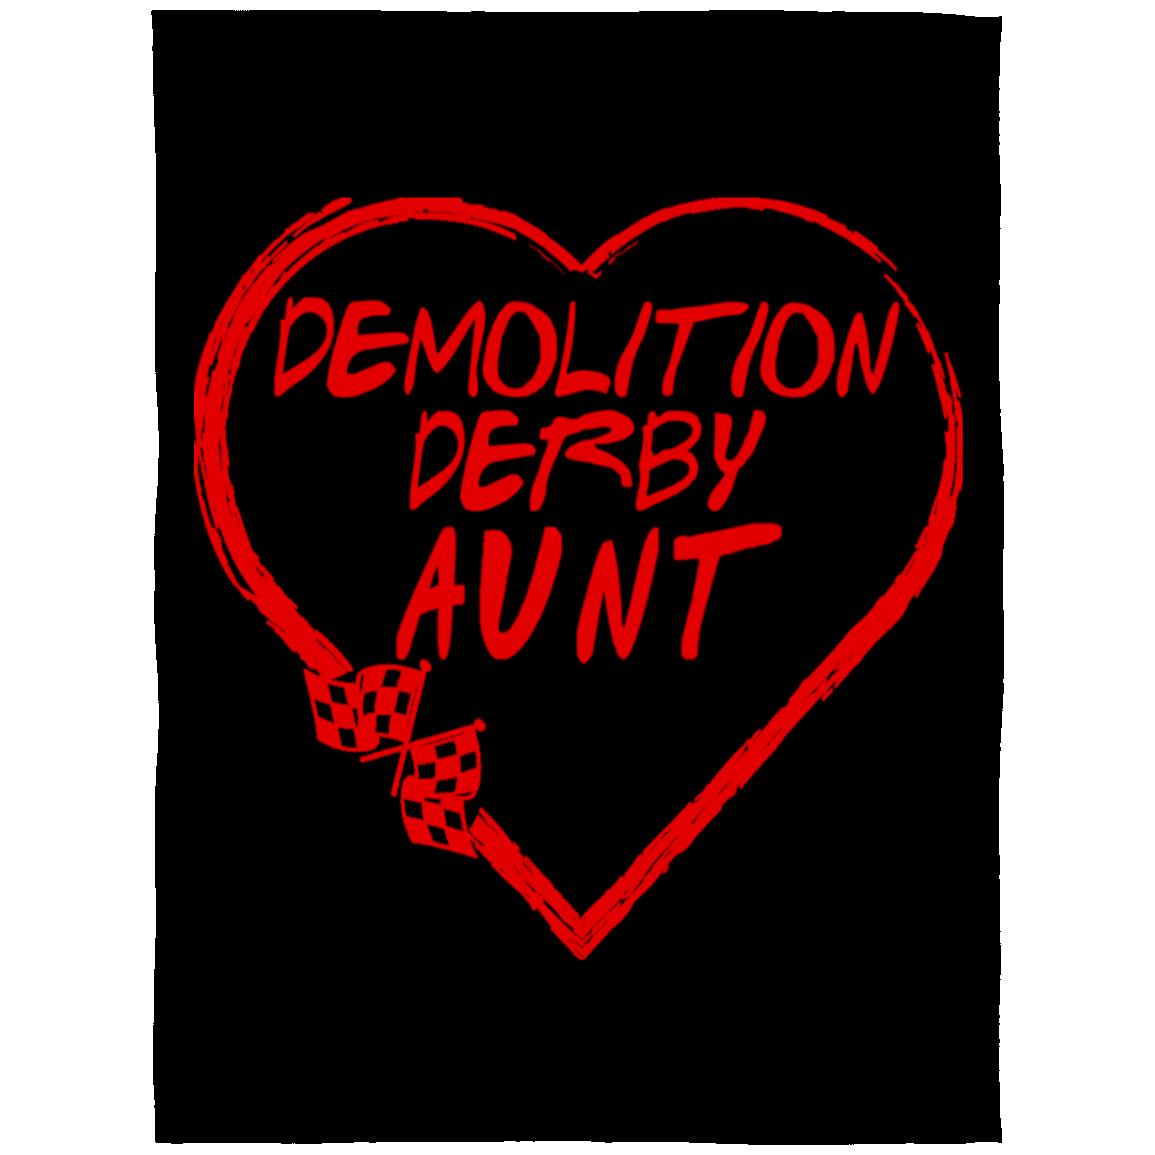 Demolition Derby Aunt Heart Arctic Fleece Blanket 60x80